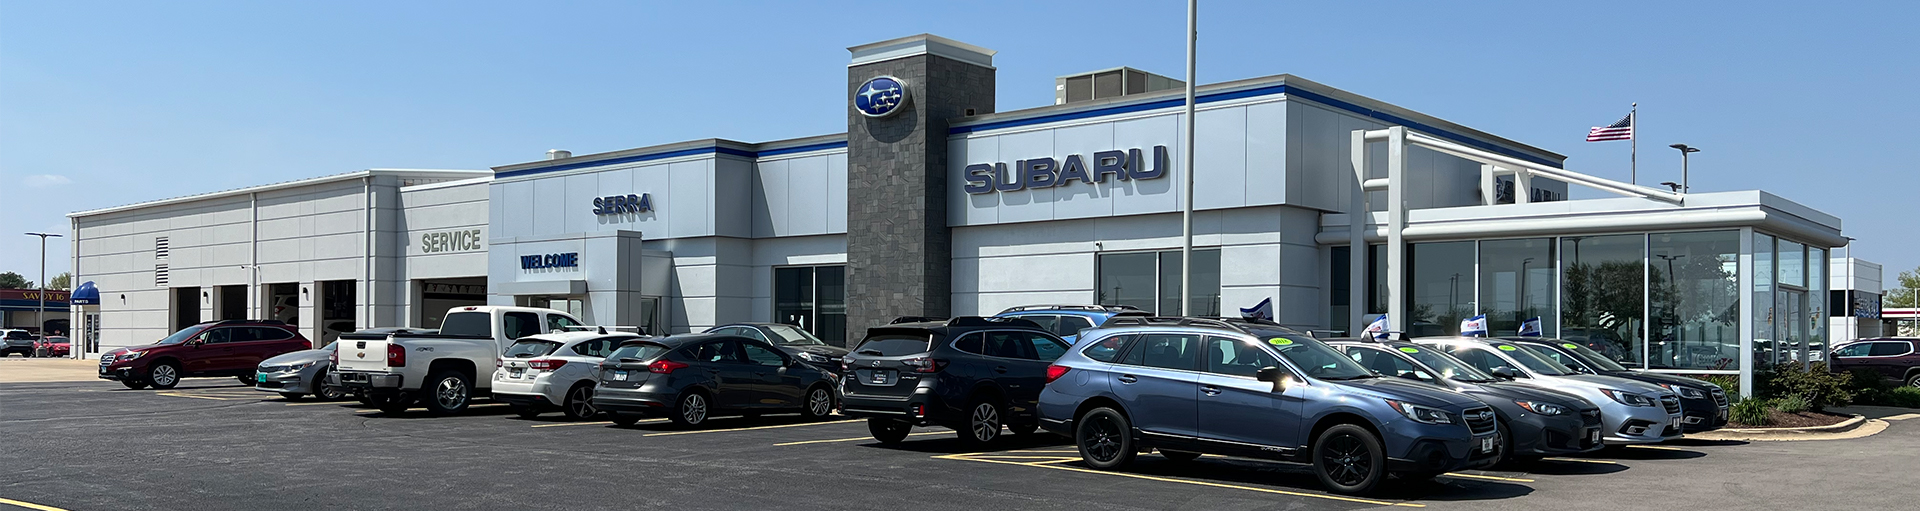 Subaru Filter Services